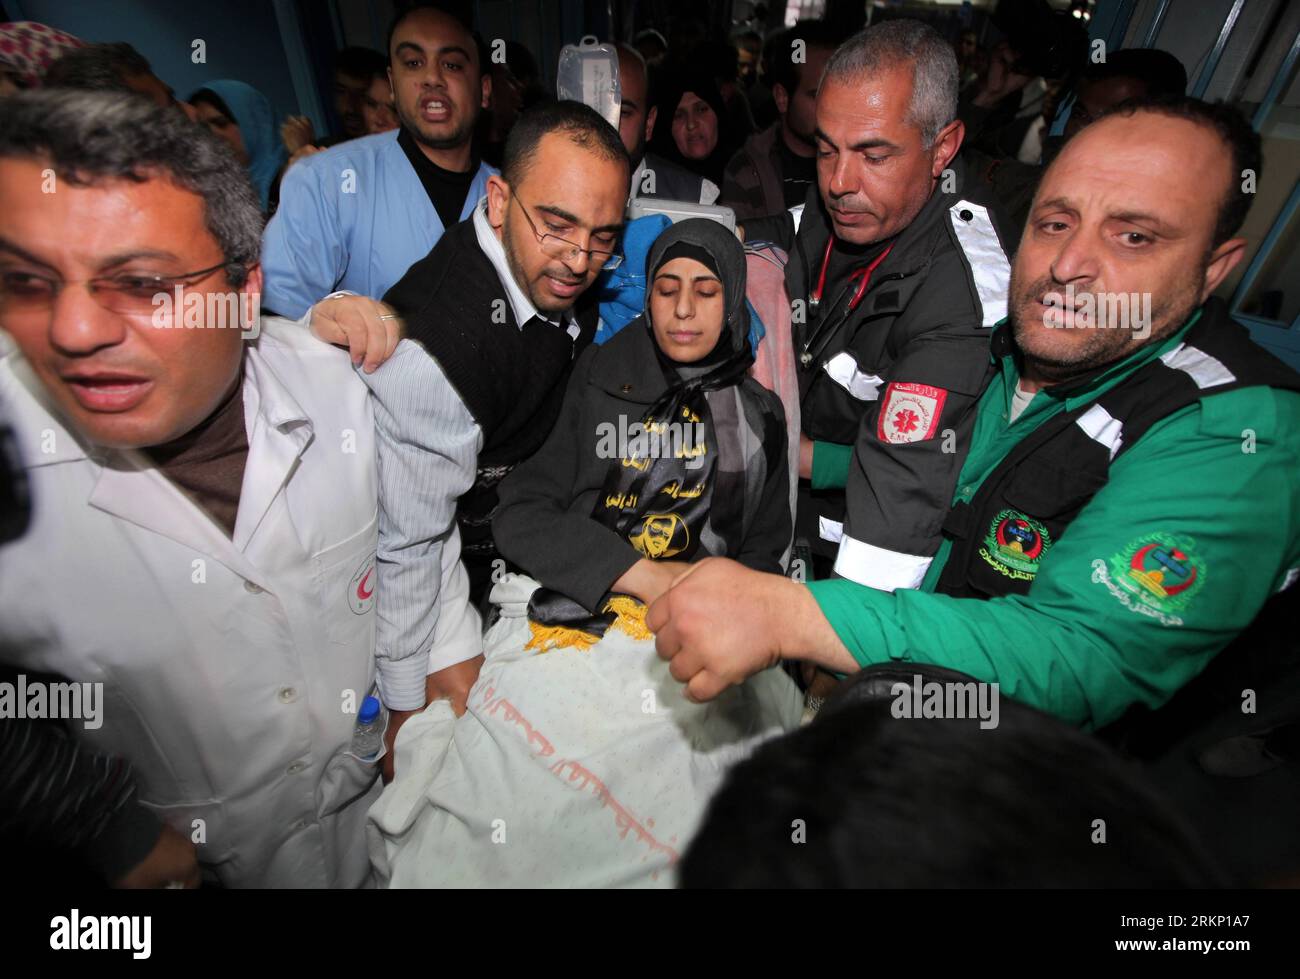 Bildnummer : 57810286 Datum : 02.04.2012 Copyright : imago/Xinhua (120402)-- GAZA, 2 avril 2012 (Xinhua) -- la prisonnière palestinienne expulsée Hanaa Shalabi (C) arrive à l'hôpital al-Shifa dans la ville de Gaza, le 1 avril 2012. Shalabi, qui a mis fin à une grève de la faim de 43 jours pour protester contre sa détention administrative par Israël, a été bannie de Cisjordanie pour son exil temporaire dans la bande de Gaza dimanche. (Xinhua/Wissam Nassar)(msq) MIDEAST-GAZA-DEPORTEE-PRISONER-HANA-SHALABI PUBLICATIONxNOTxINxCHN Politik Gesellschaft Hungerstreik Krankenhaus Einlieferung xda x0x 2012 quer 57810286 Date 02 04 2 Banque D'Images